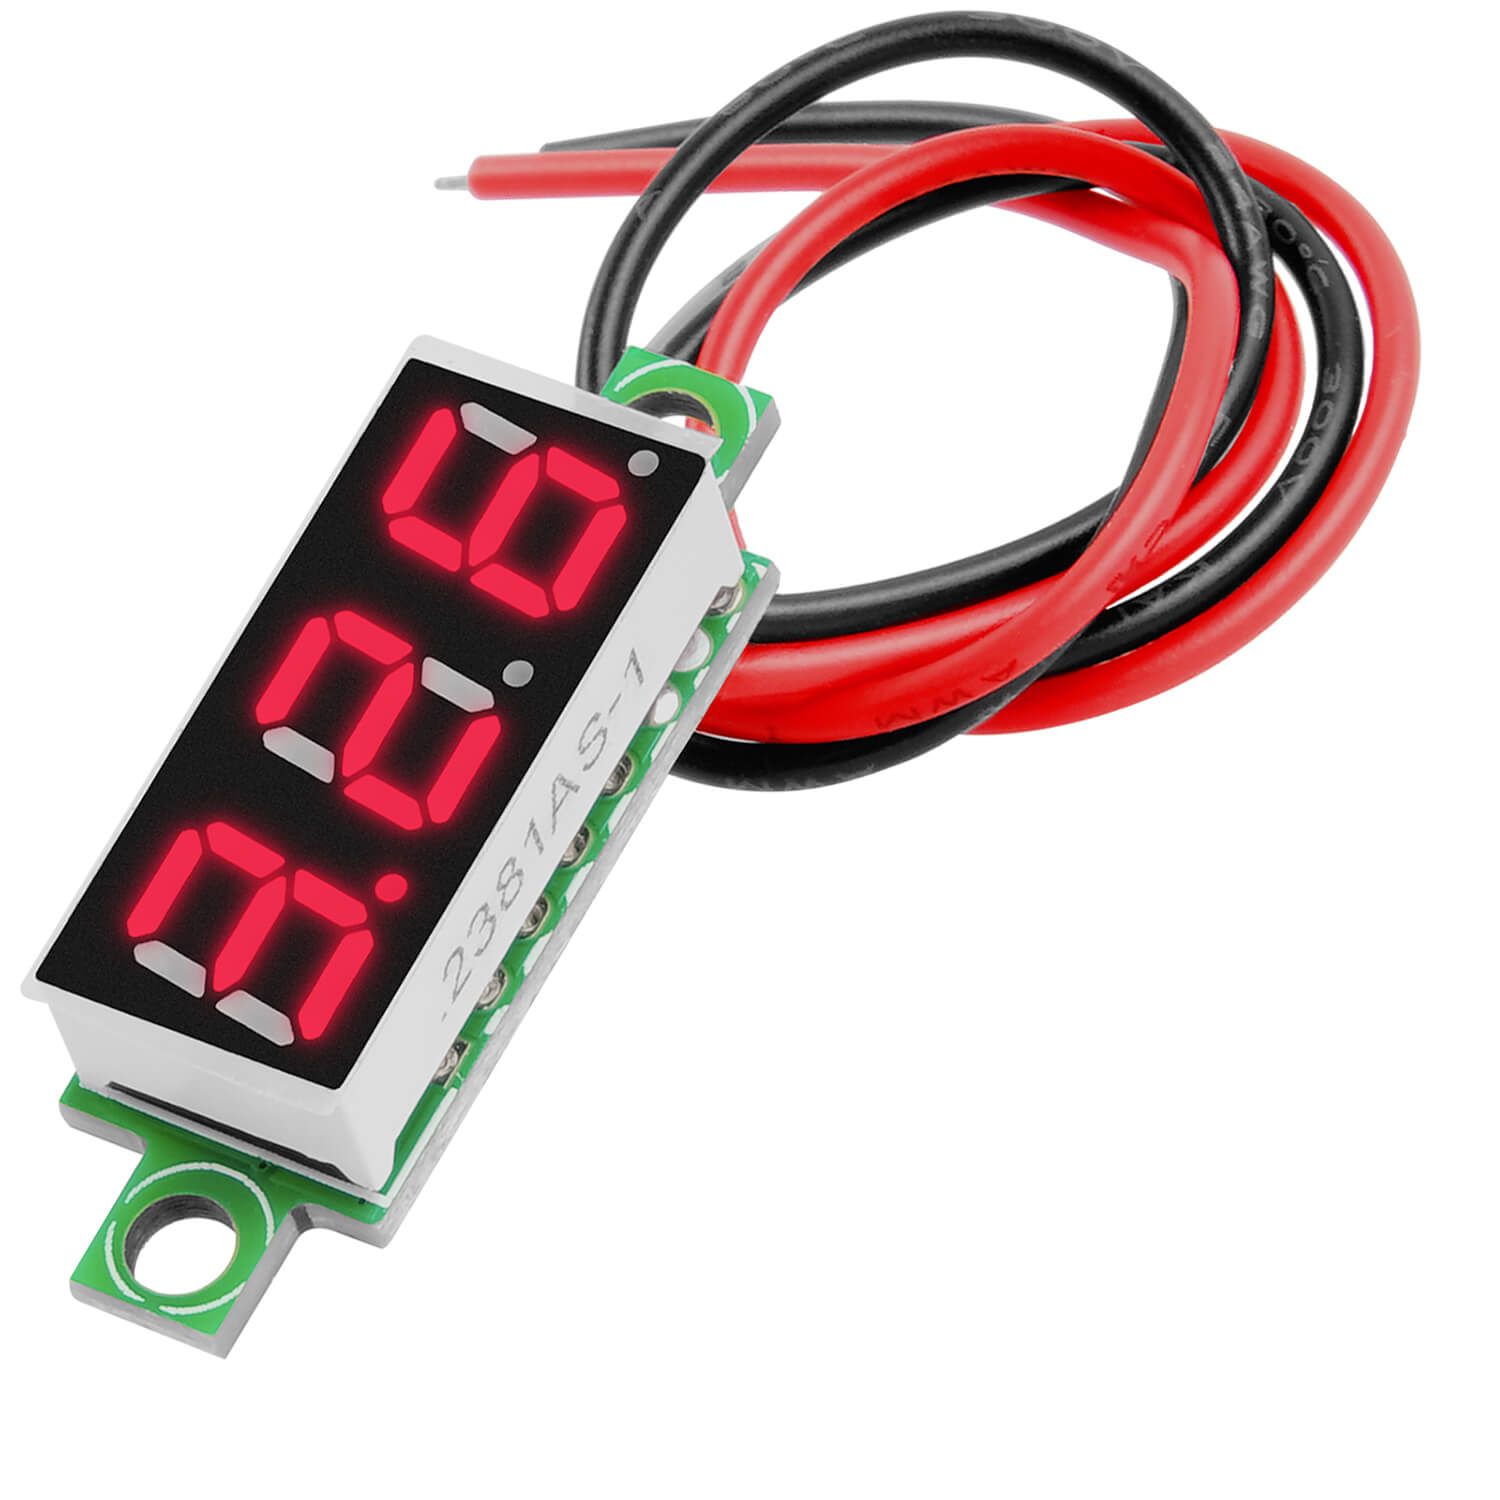 0,28 Zoll Mini Digital Voltmeter Spannungsmesser mit 7-Segment Anzeige 2,5V - 30V